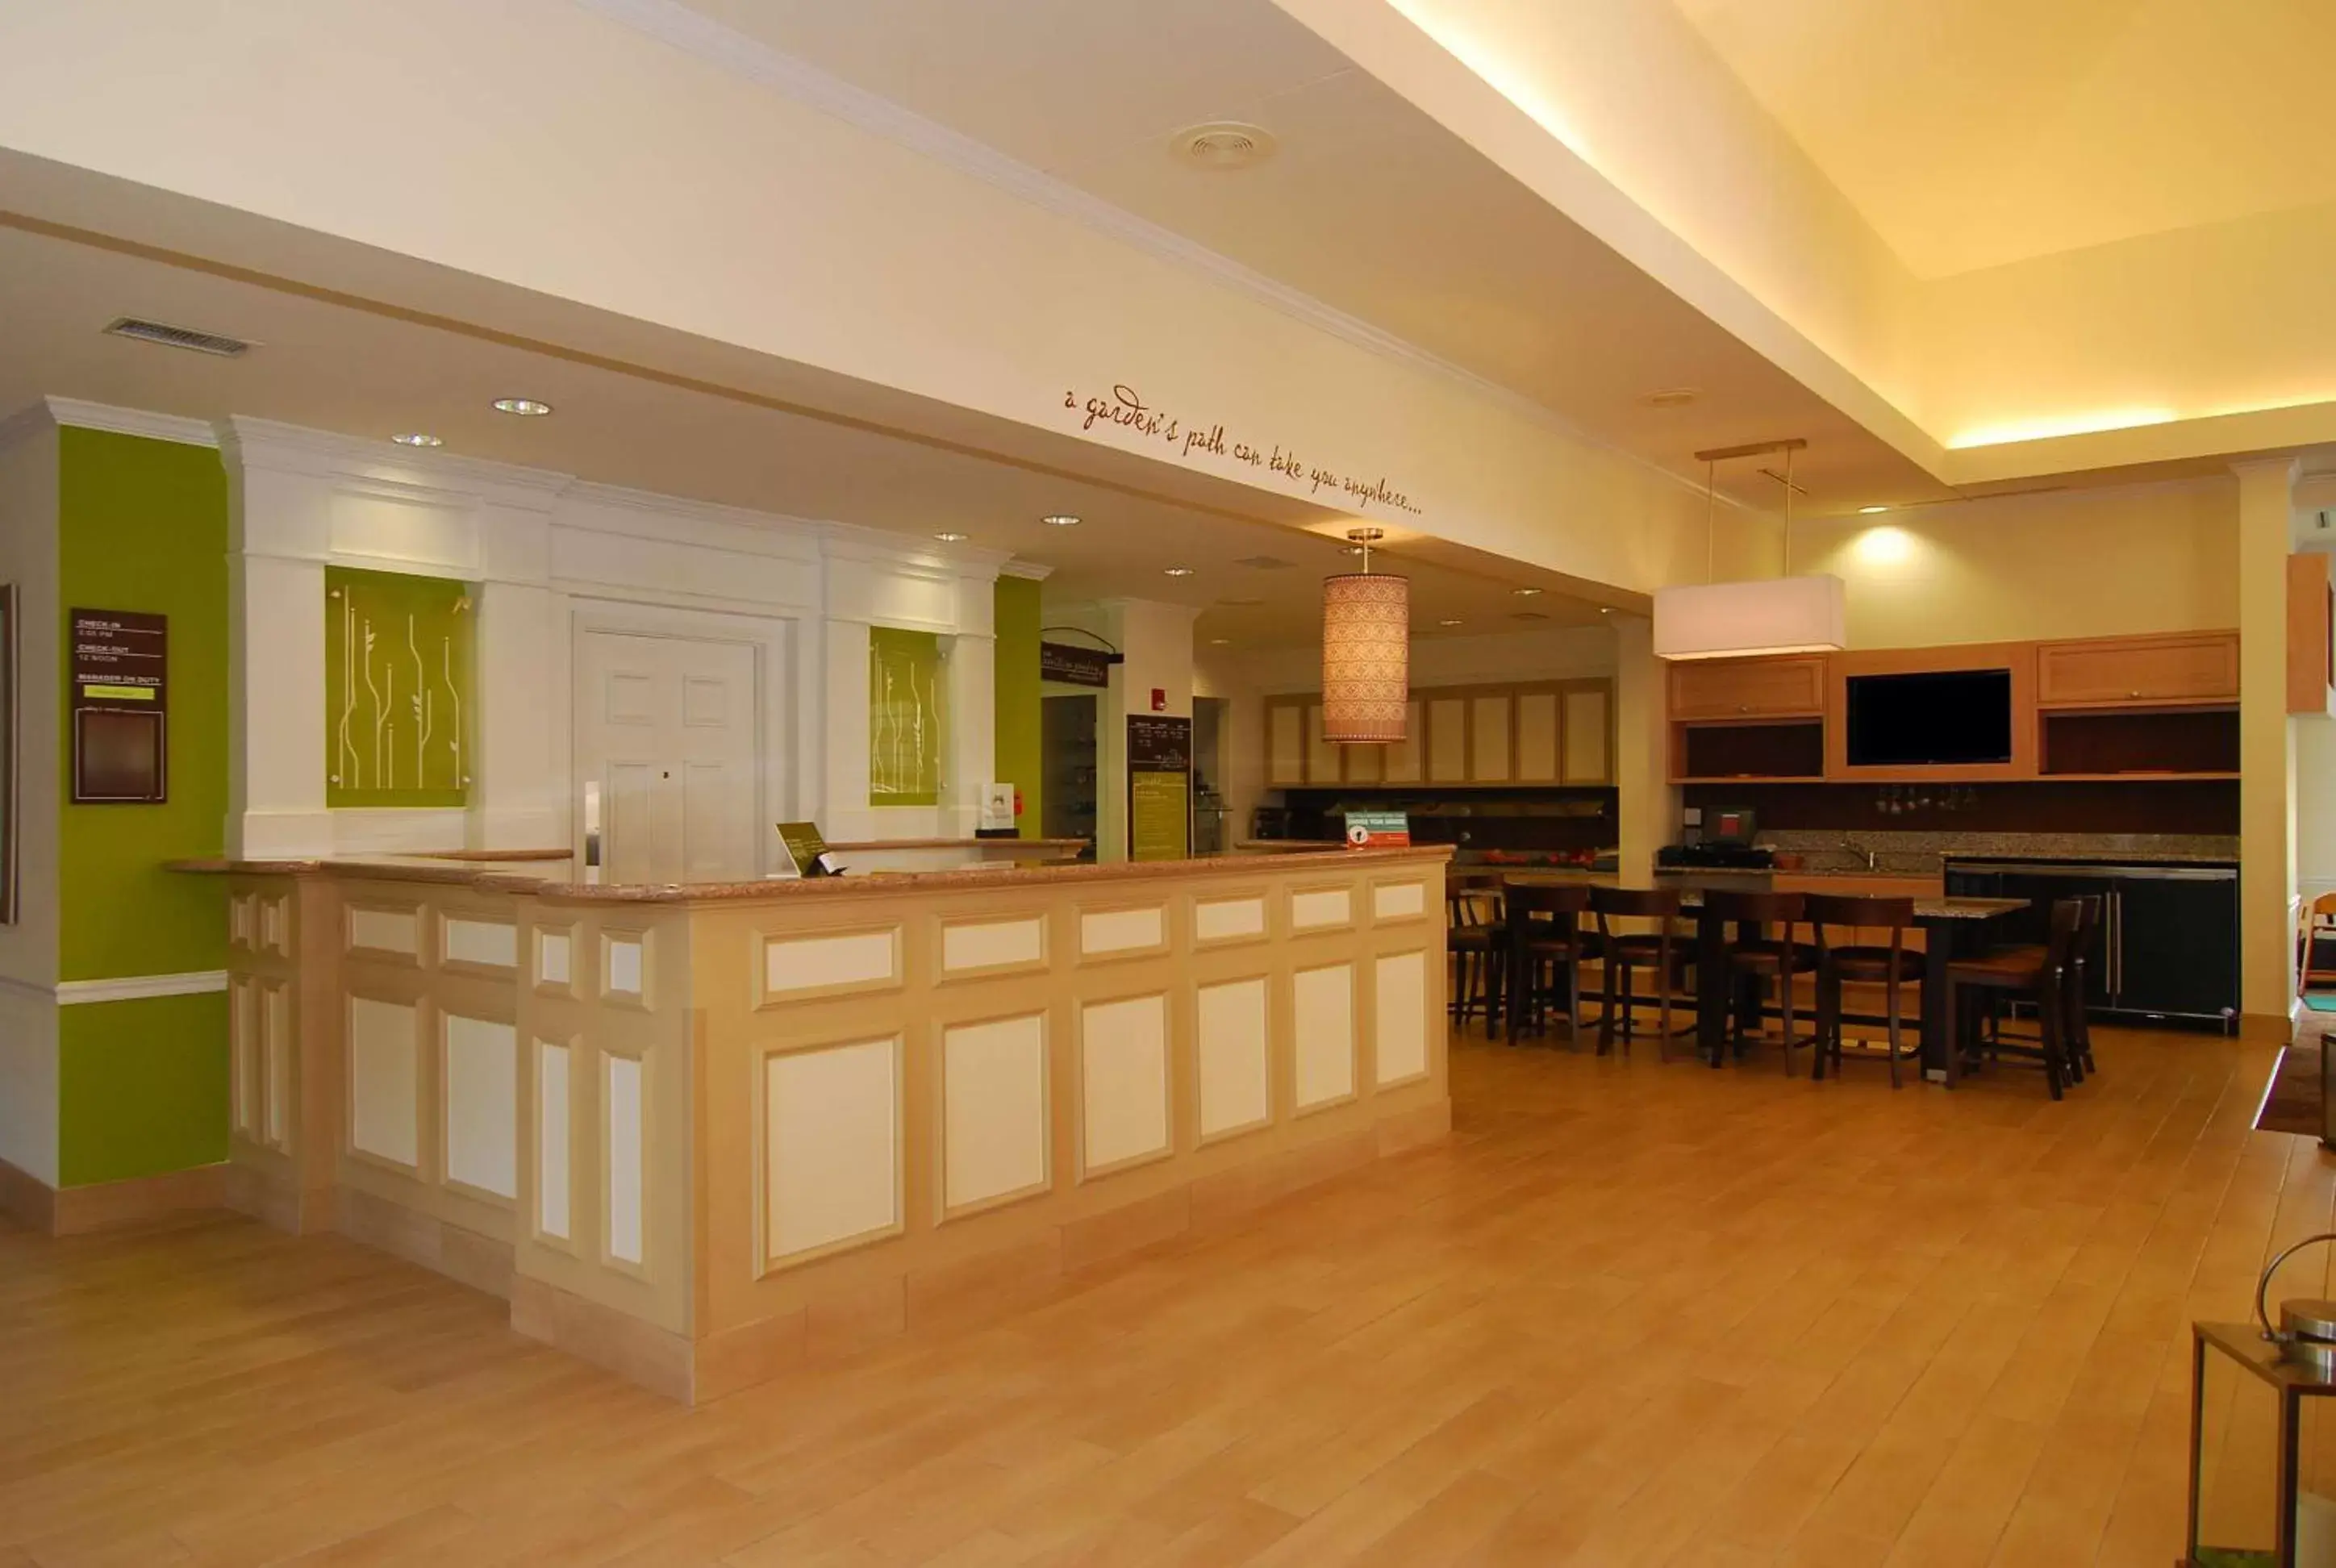 Lobby or reception, Lobby/Reception in Hilton Garden Inn Columbus/Grove City